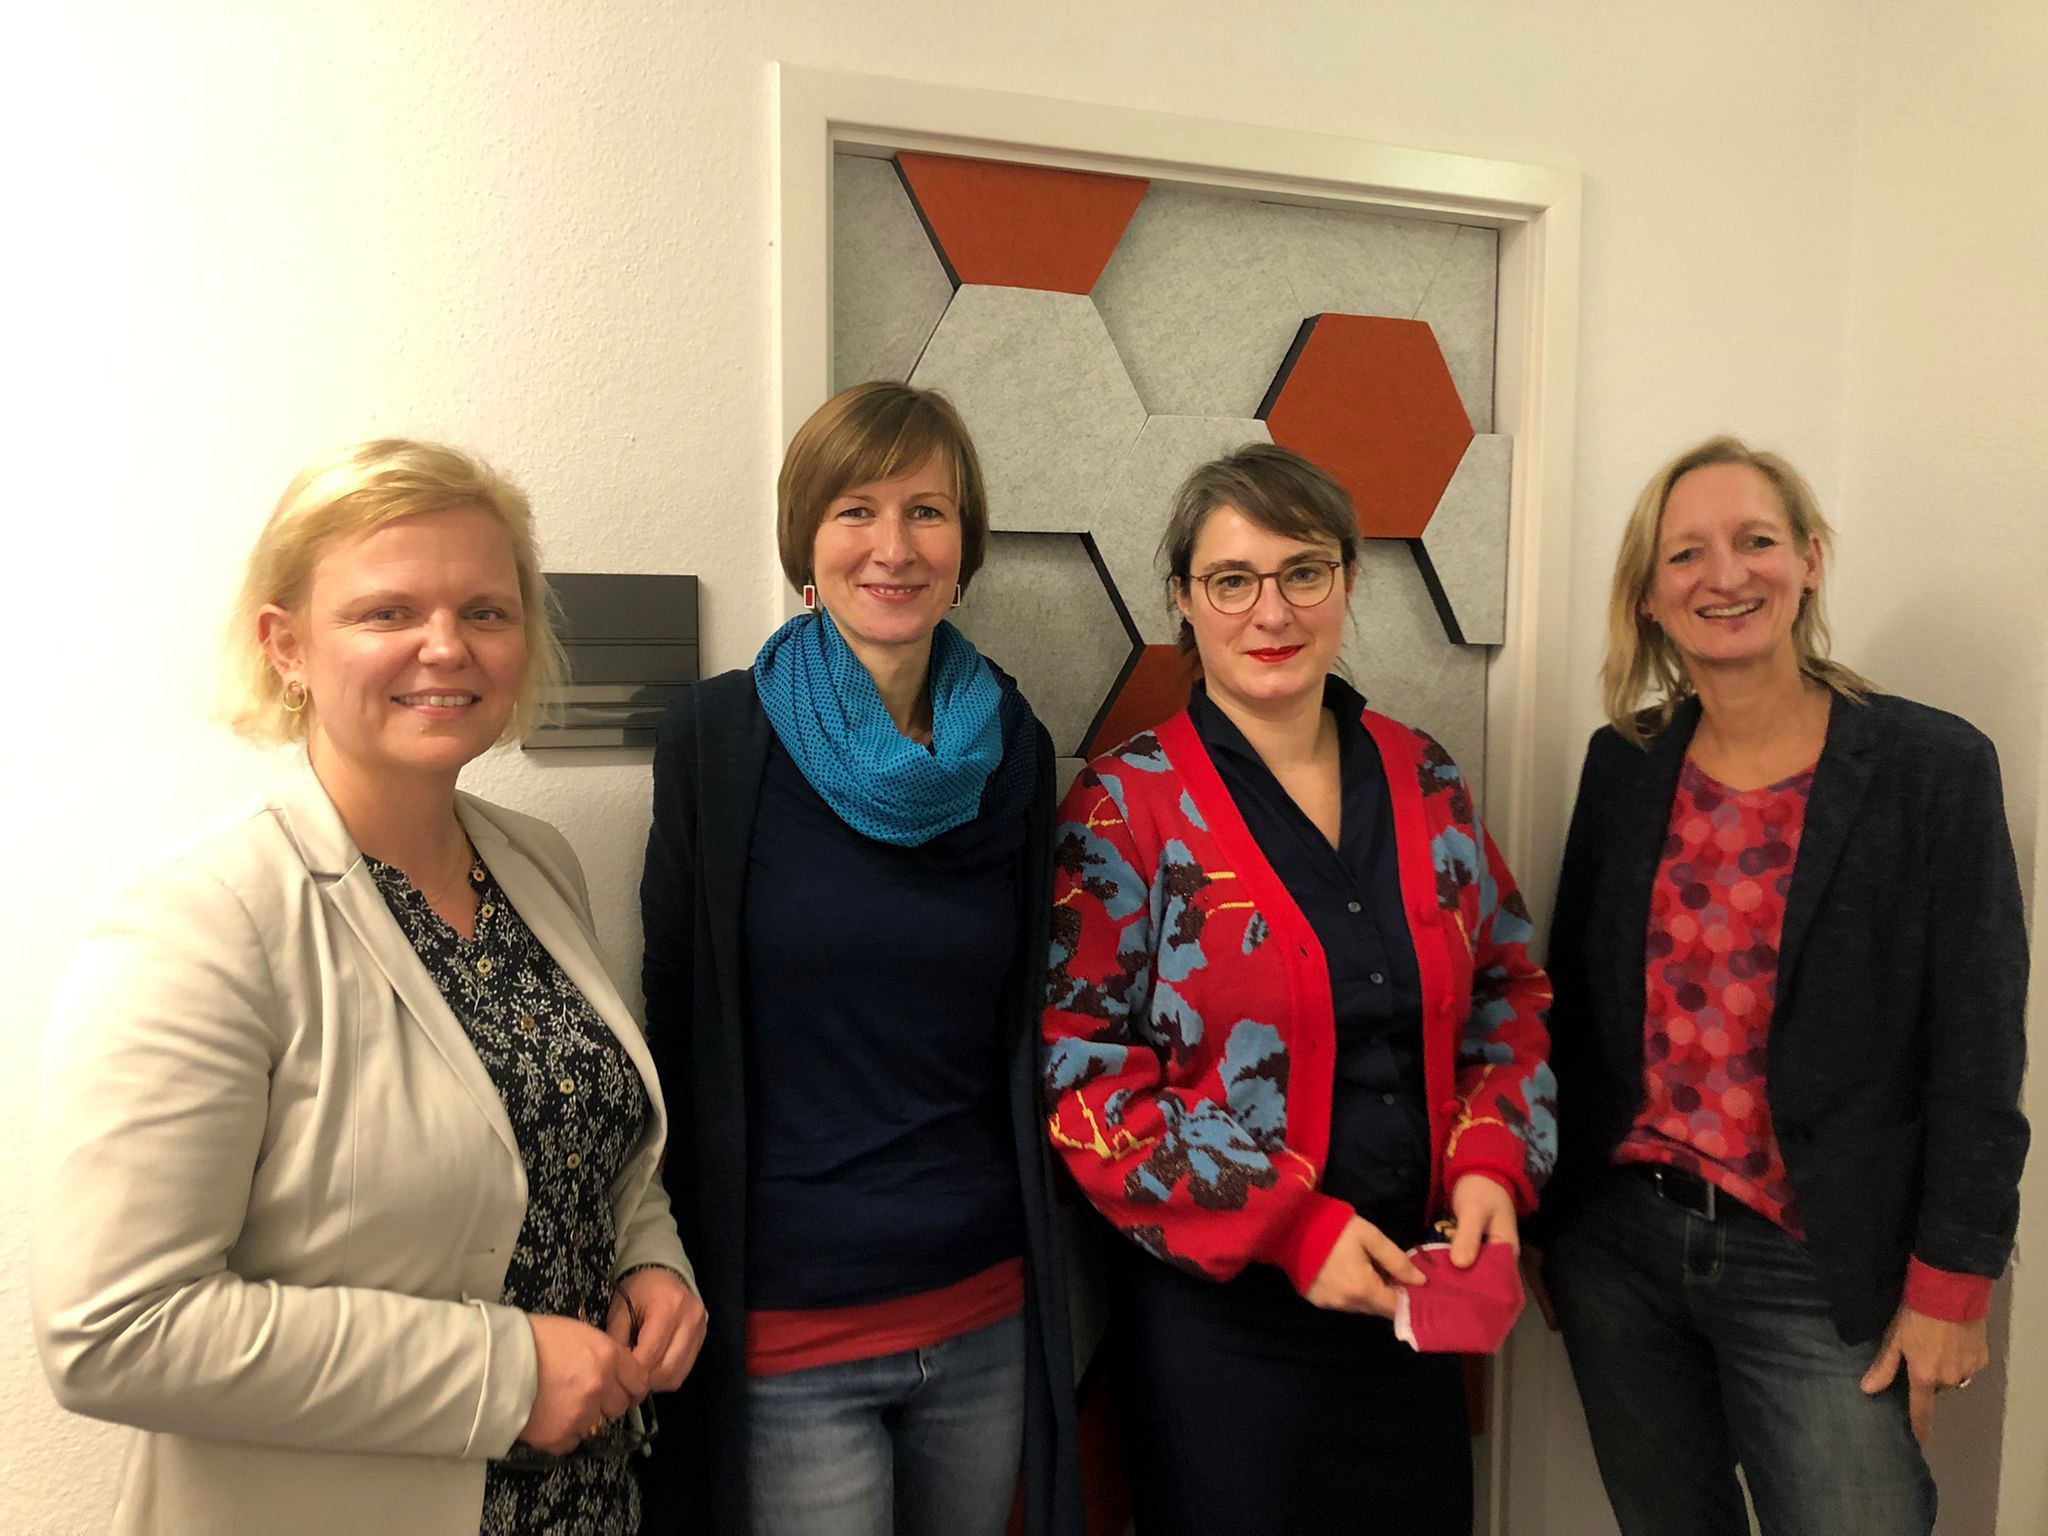 v.l.n.r.: Katja Glybowskaja, Anne Friedemann (Projektmitarbeiterin IBS), Ulrike Grosse-Röthig und Christiane Götze